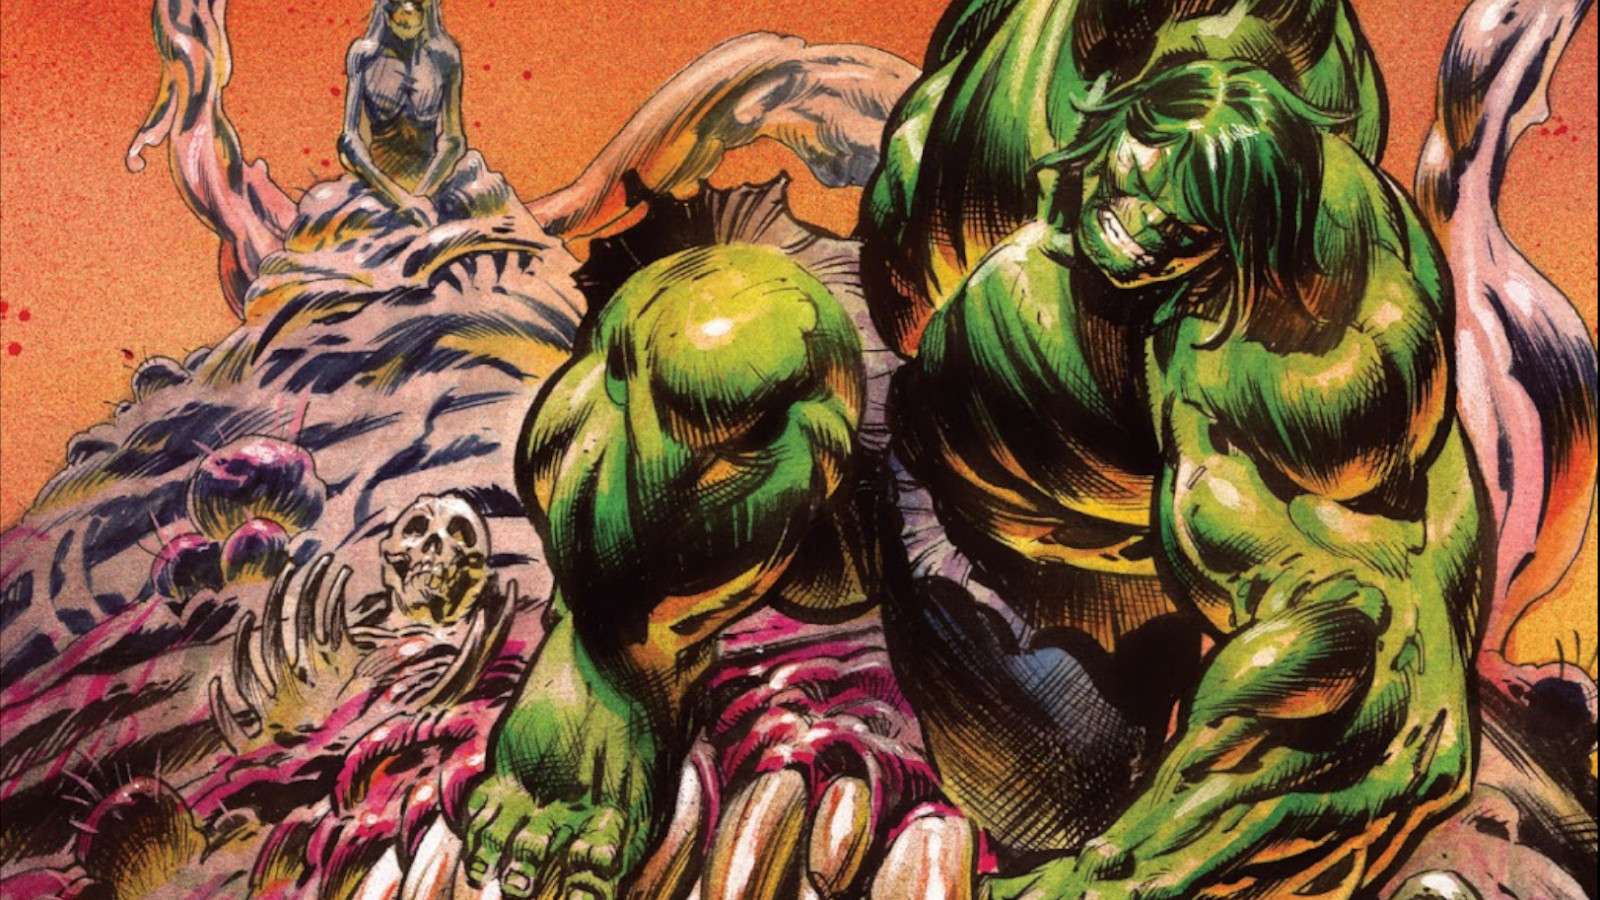 Incredible Hulk #5 cover art